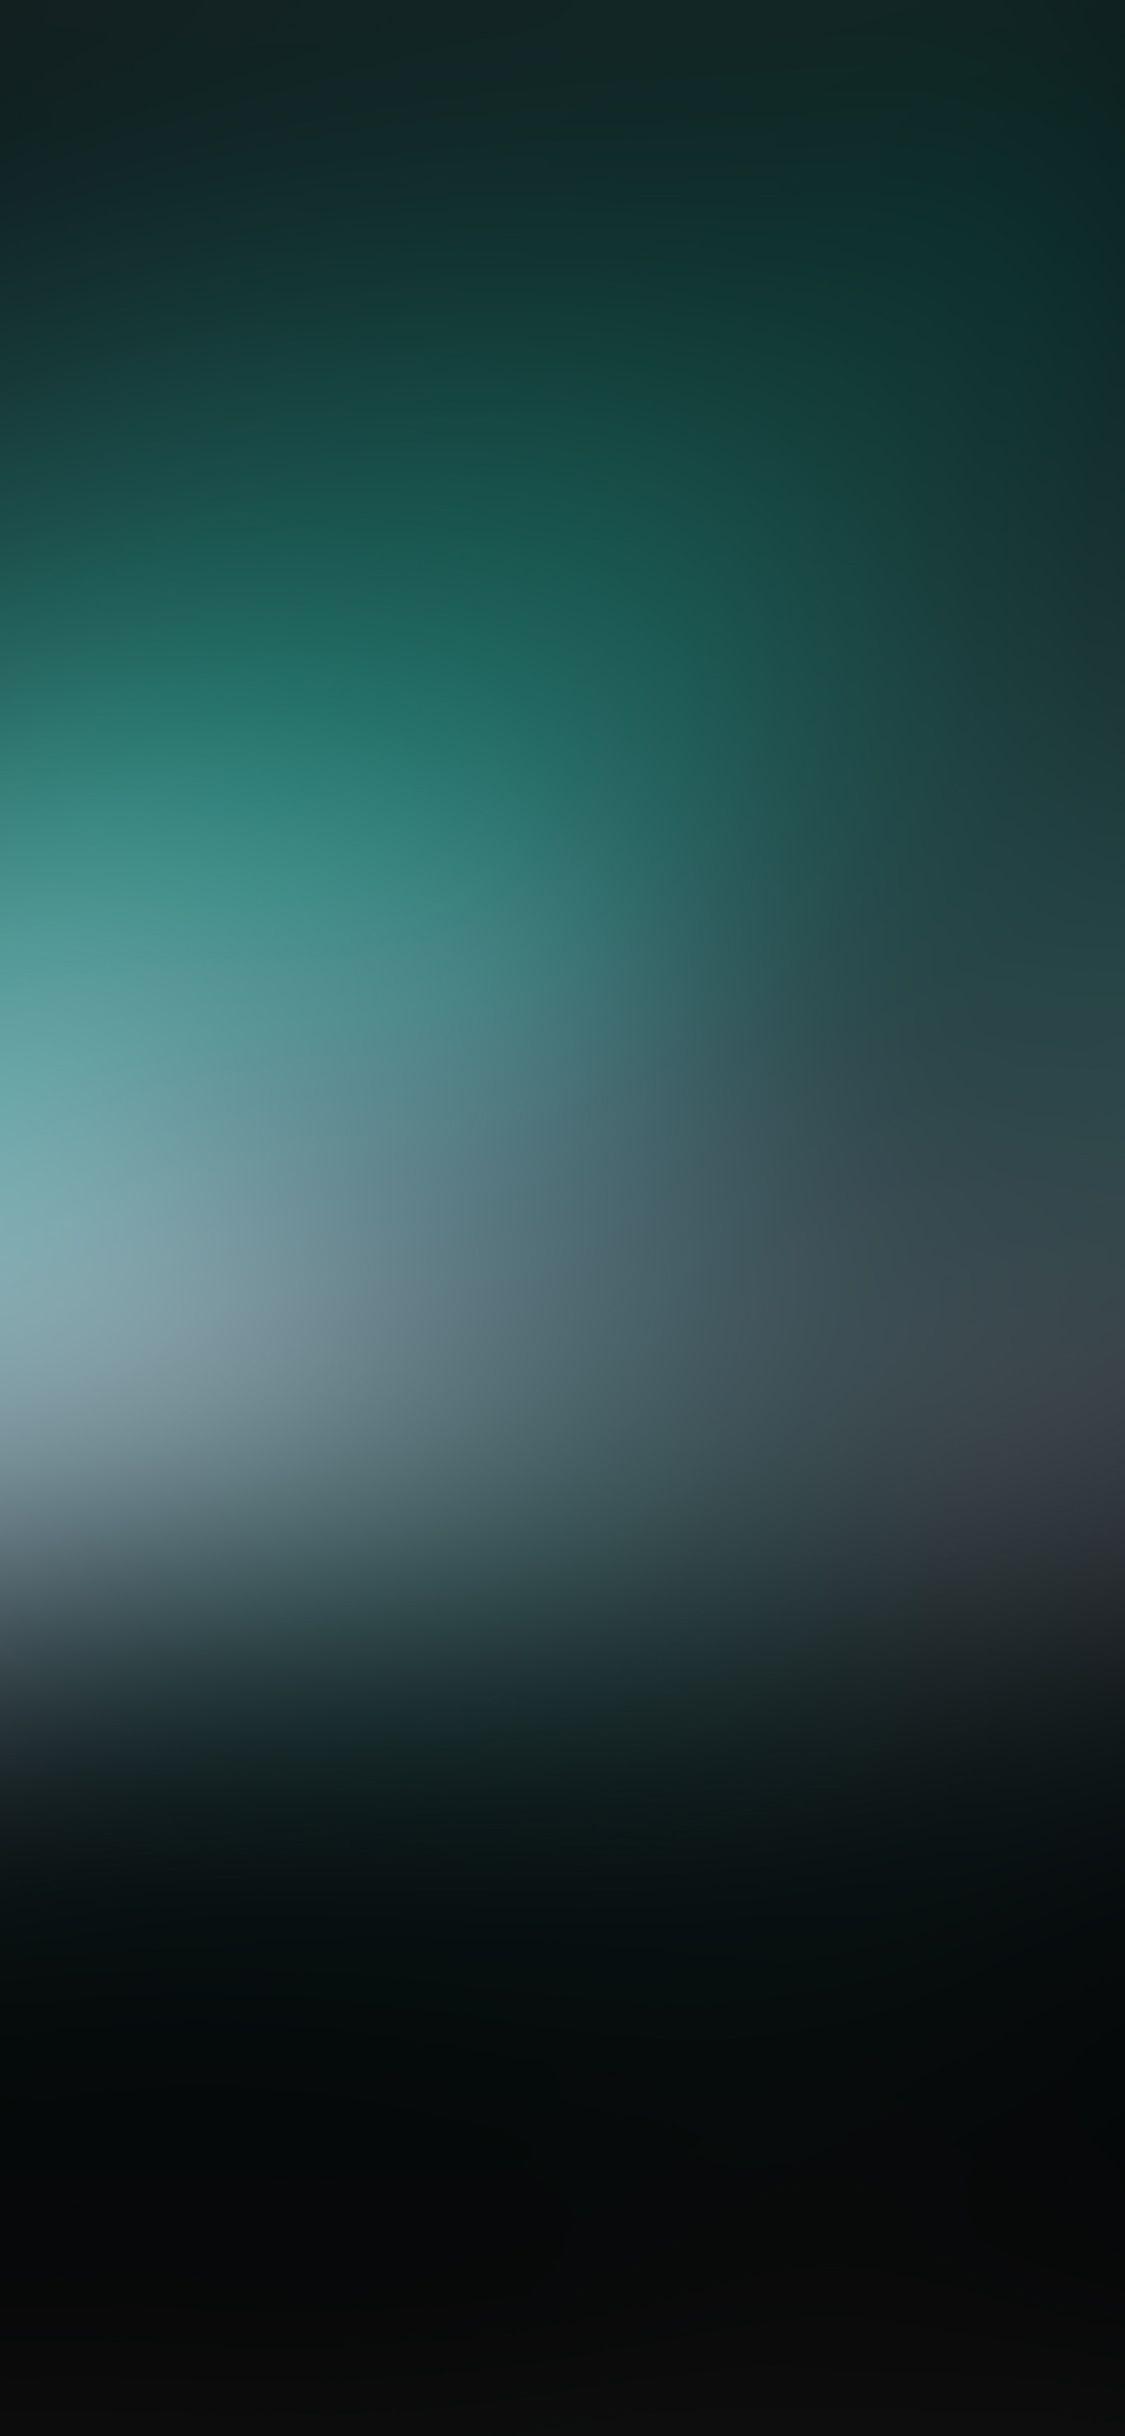 iPhone X wallpaper. green dark aurora blur